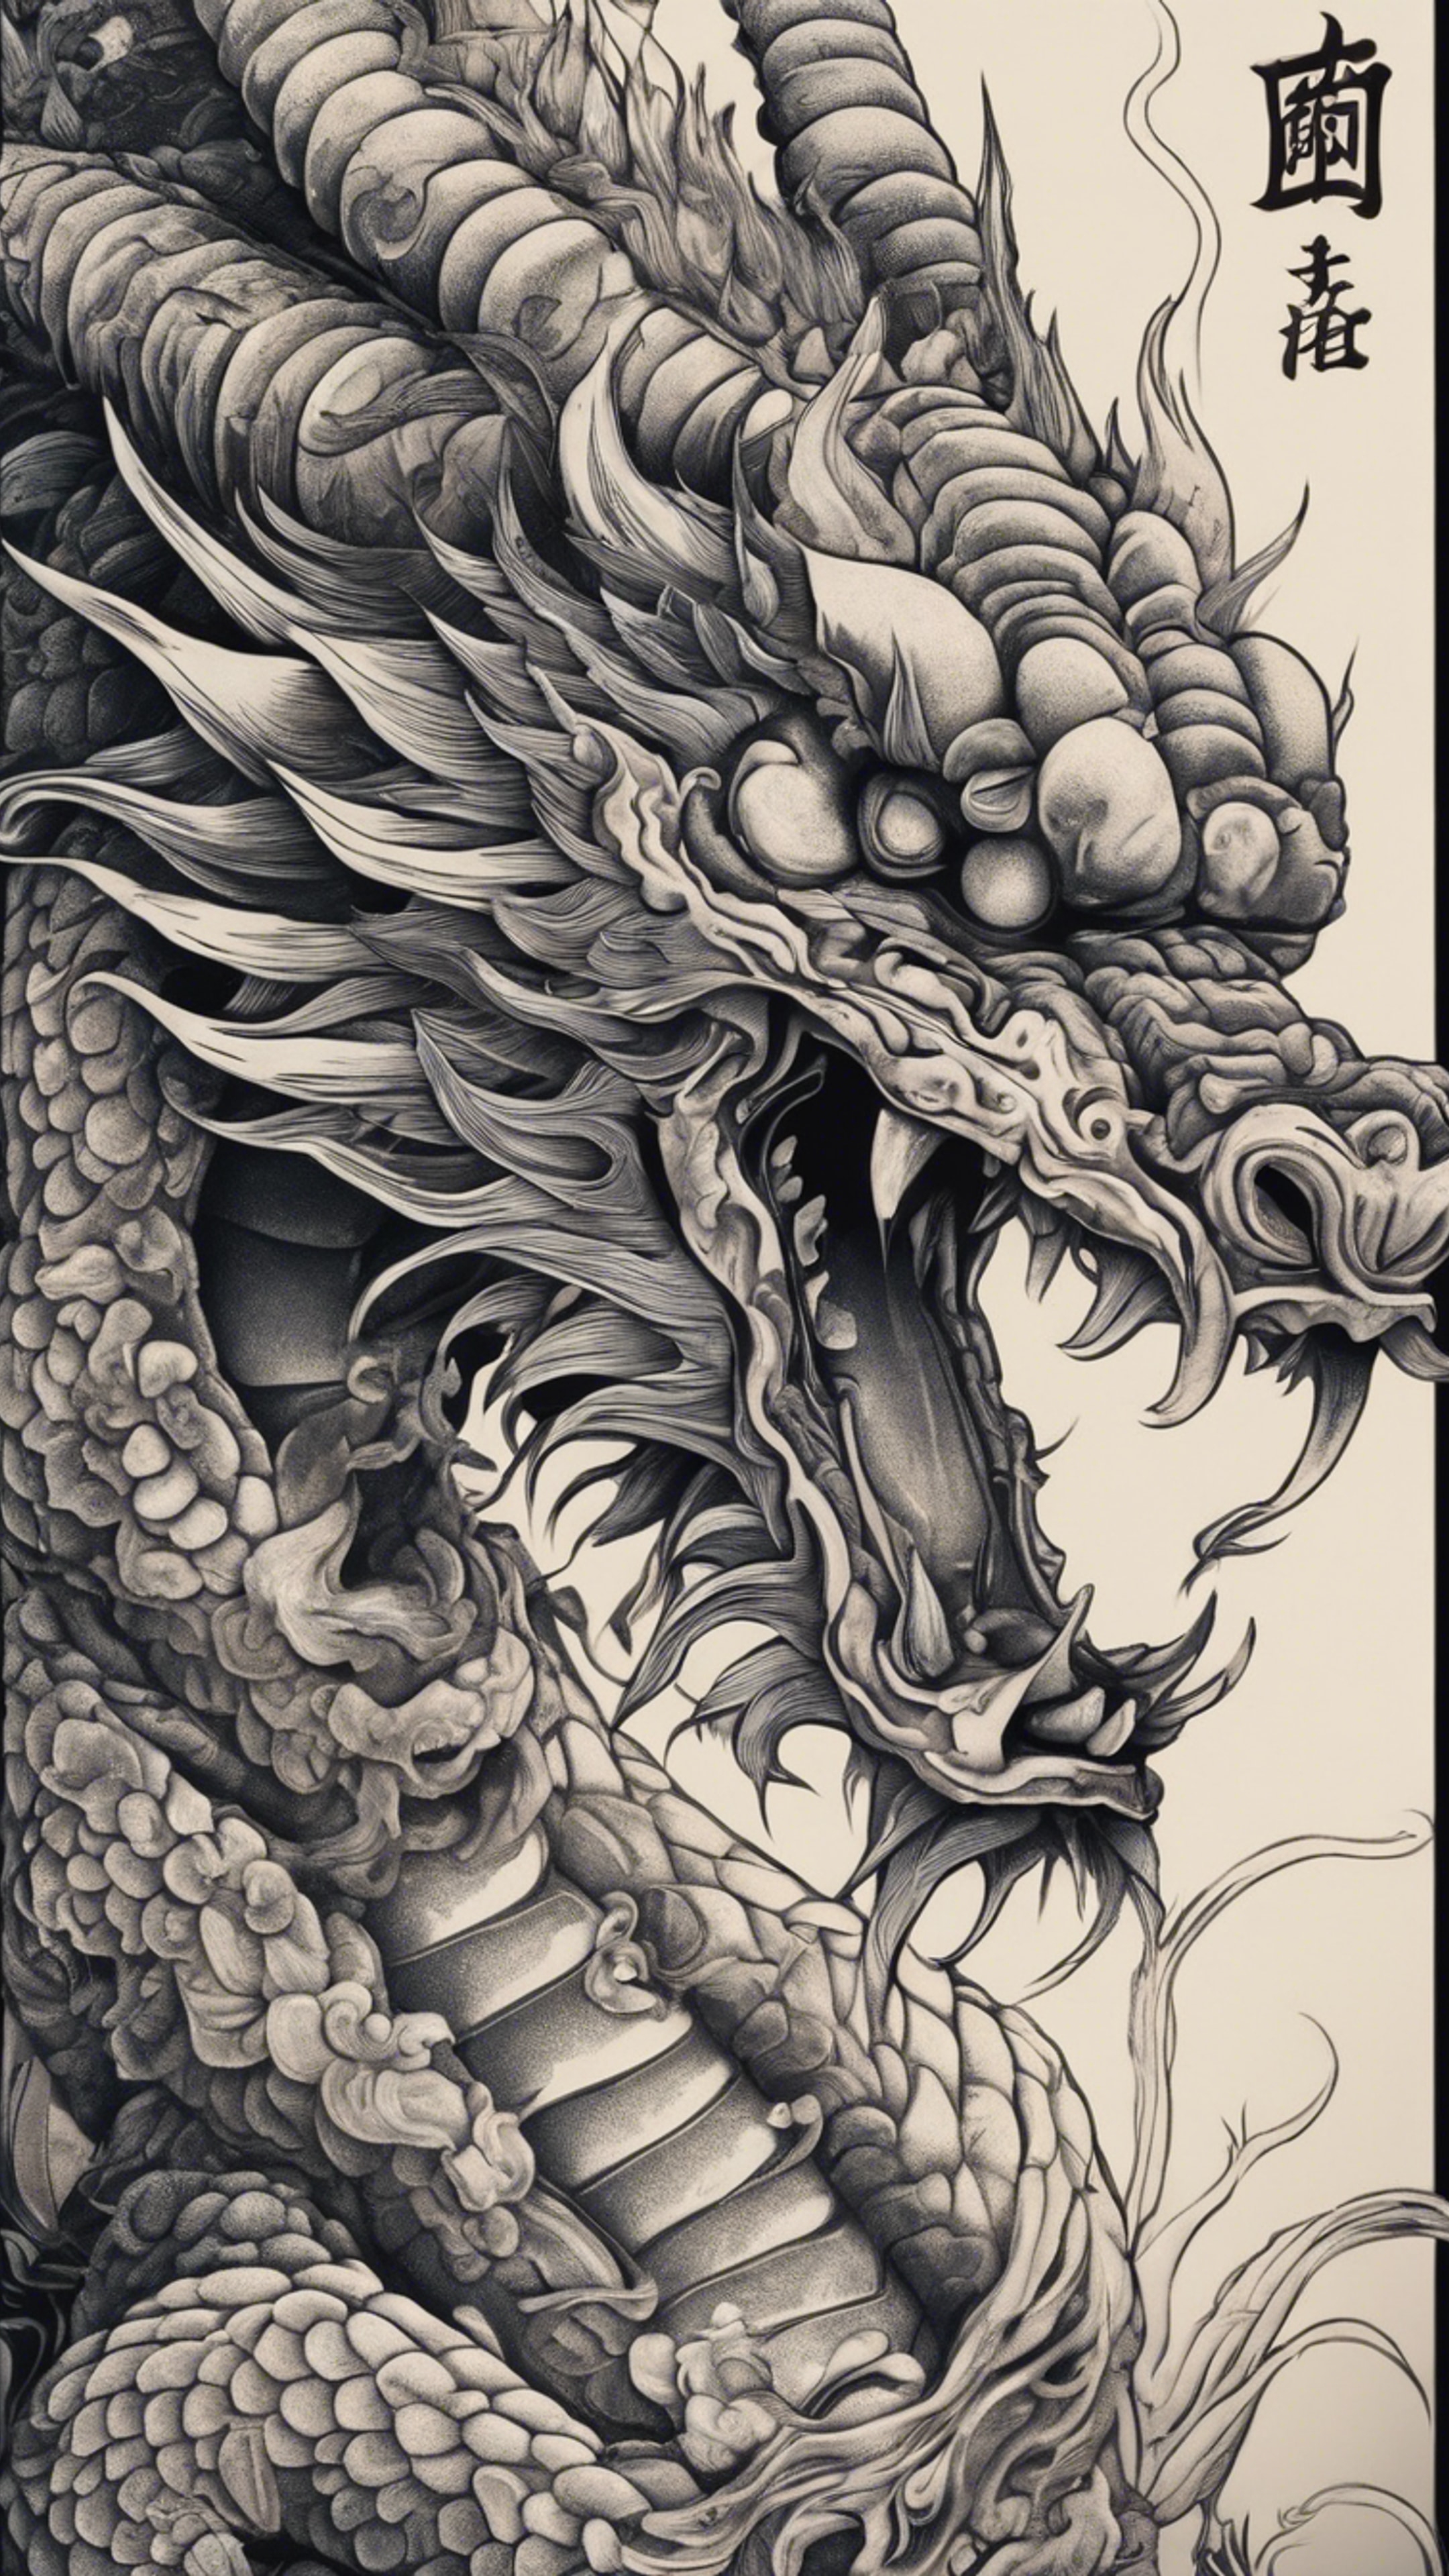 A Japanese dragon tattoo design with intricate details. Tapetai[fa4ff1f2e6c24a2f94e4]